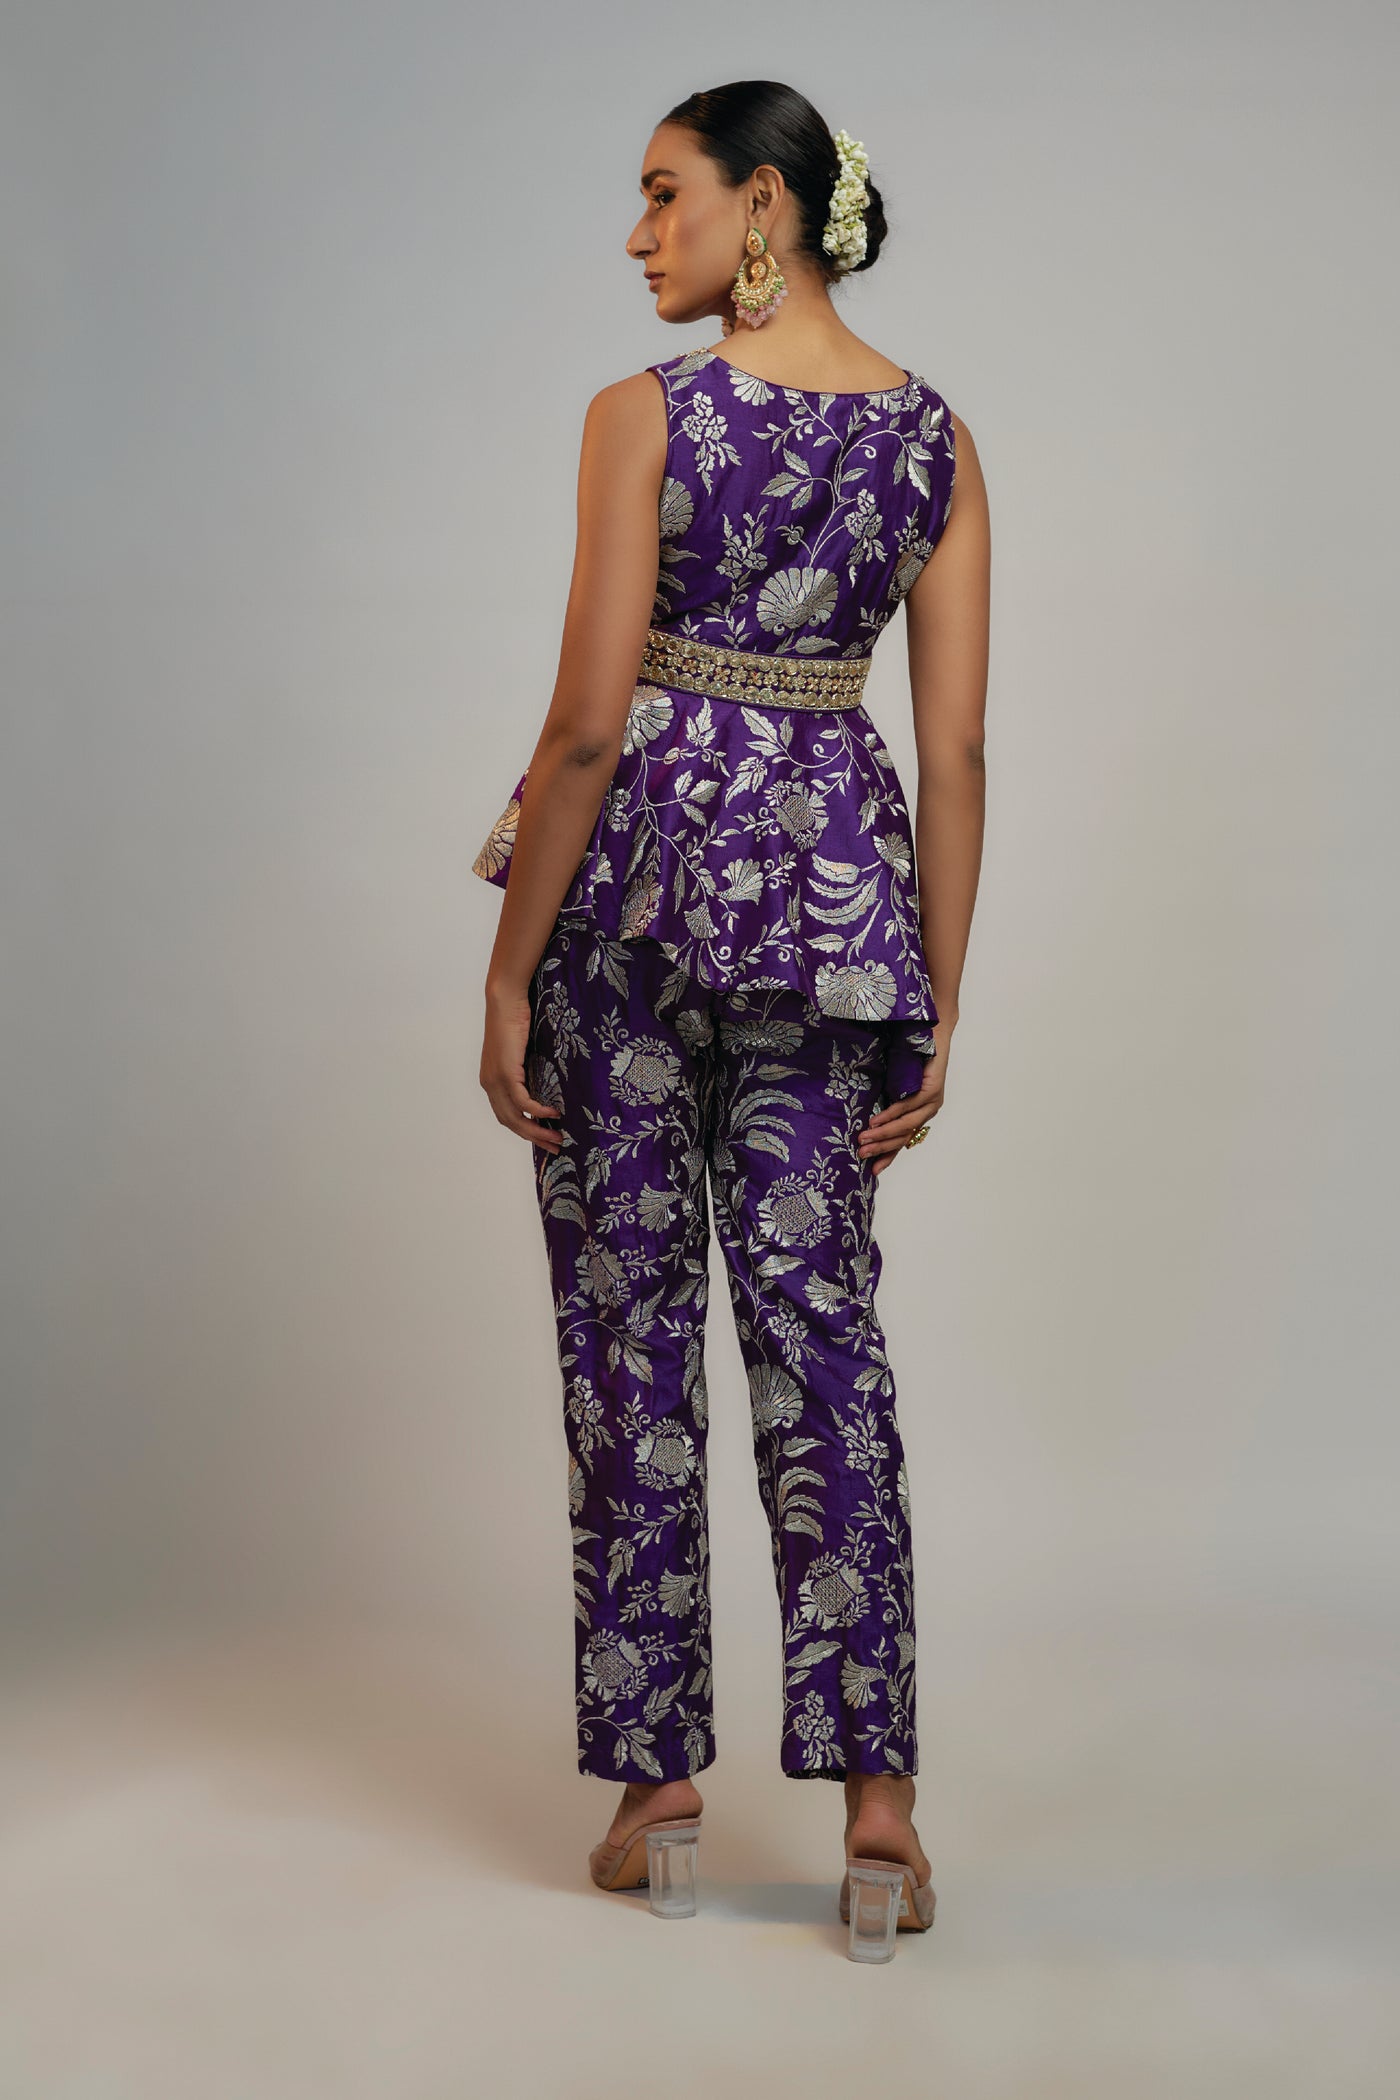 Gopi Vaid Golconda Adveta Pant Set indian designer wear online shopping melange singapore